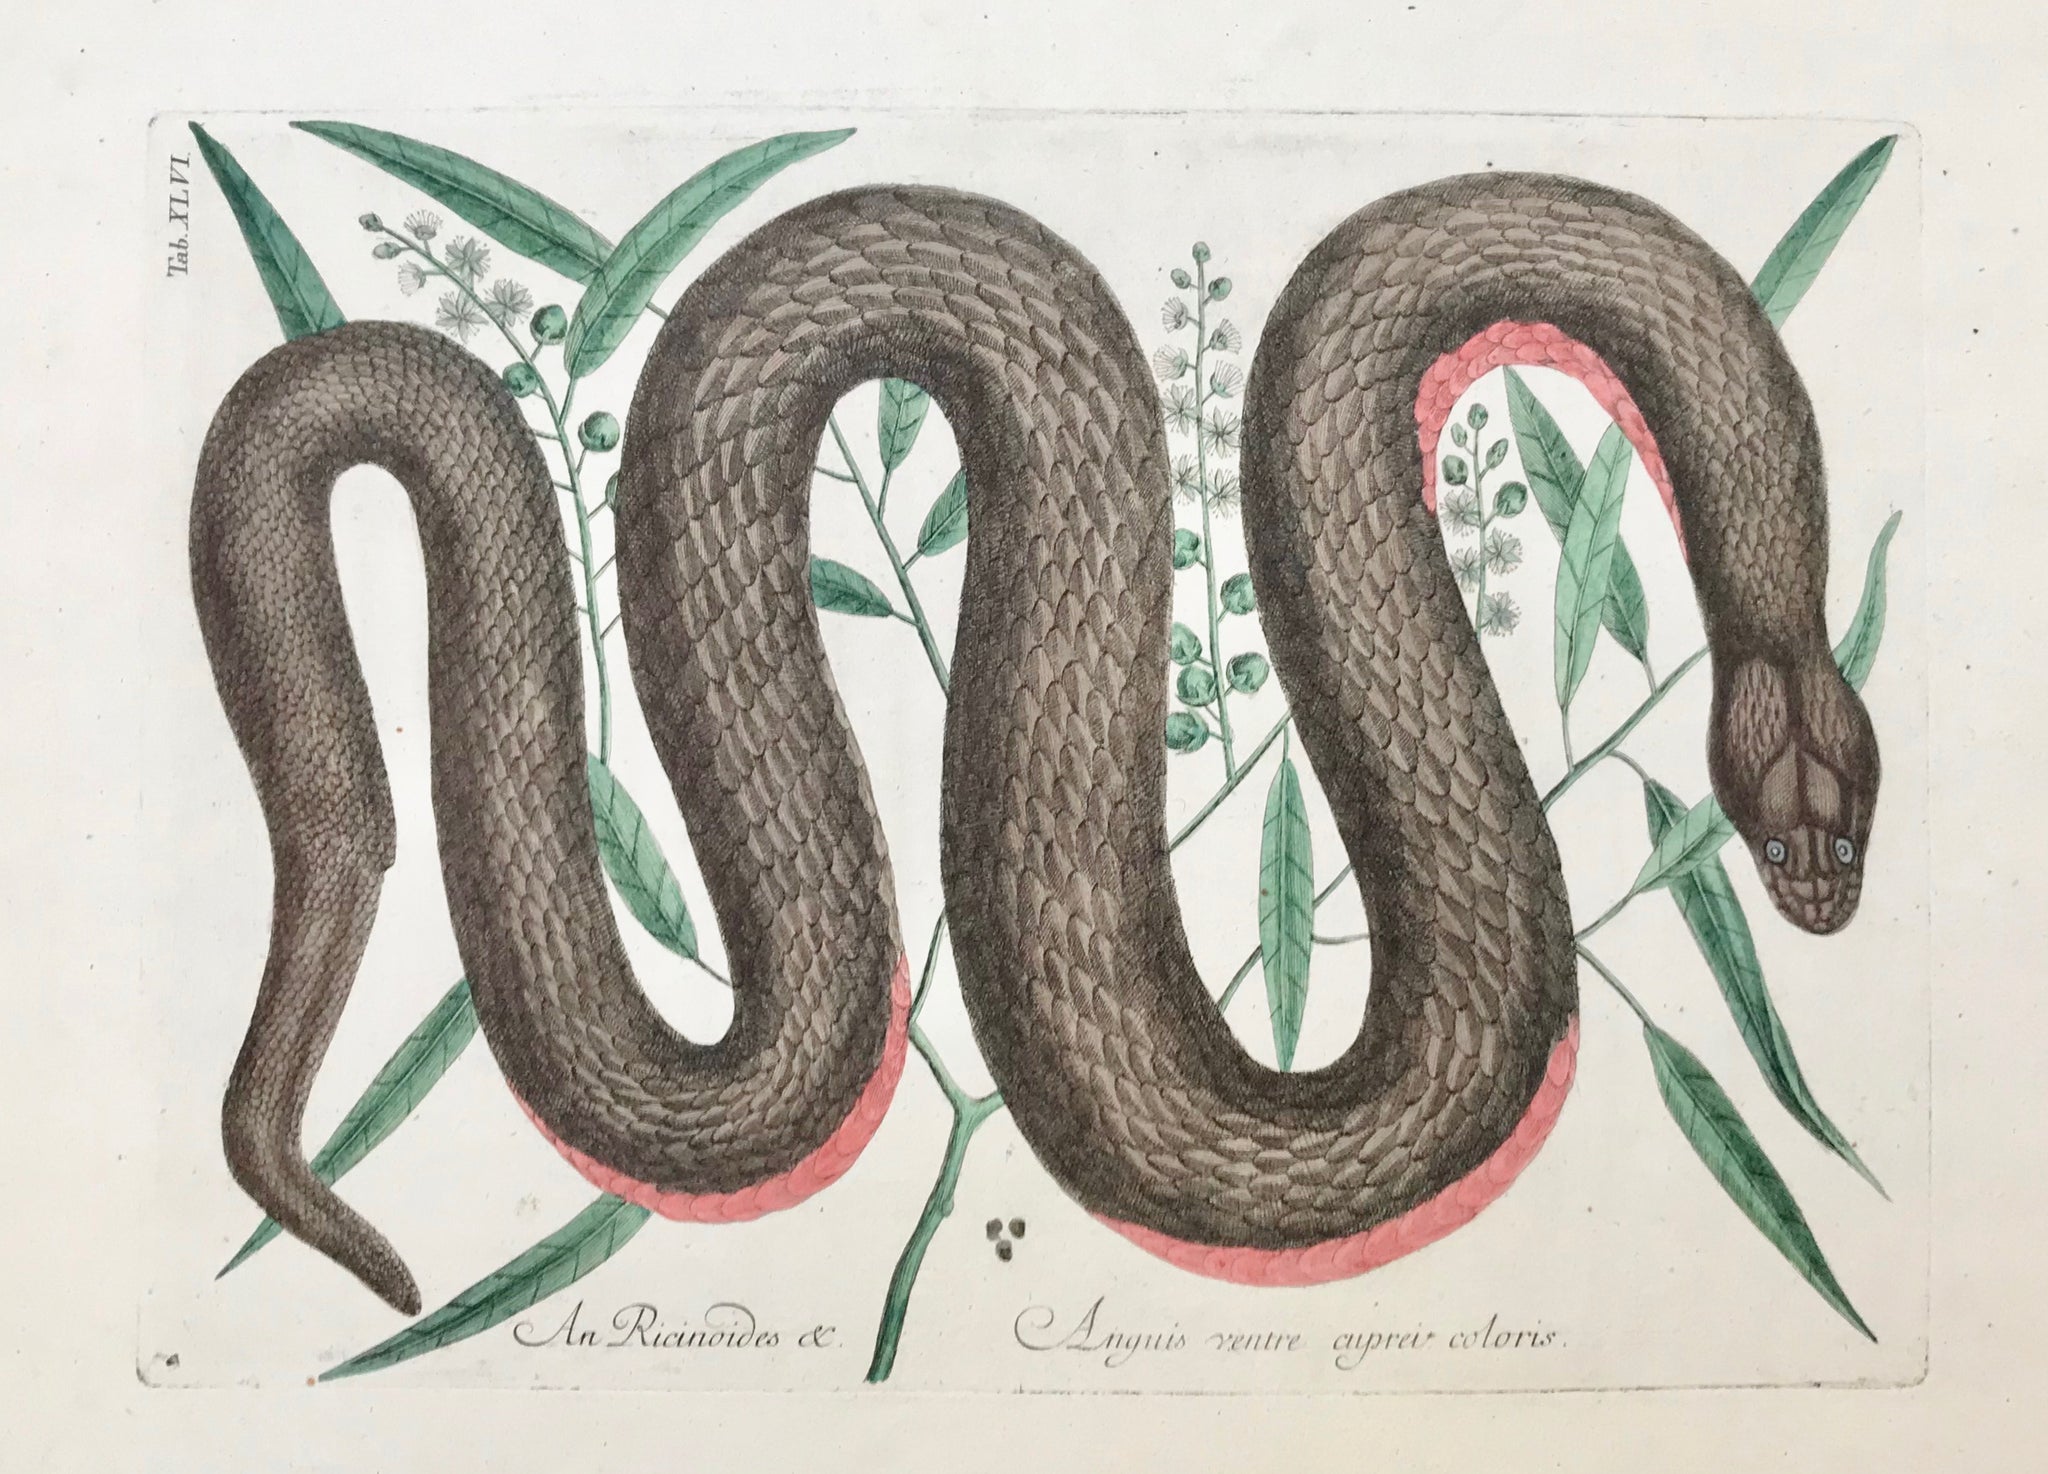 Snake: "An Ricinoides Anguis ventre cuprei coloris"  Good condition  Mark Catesby